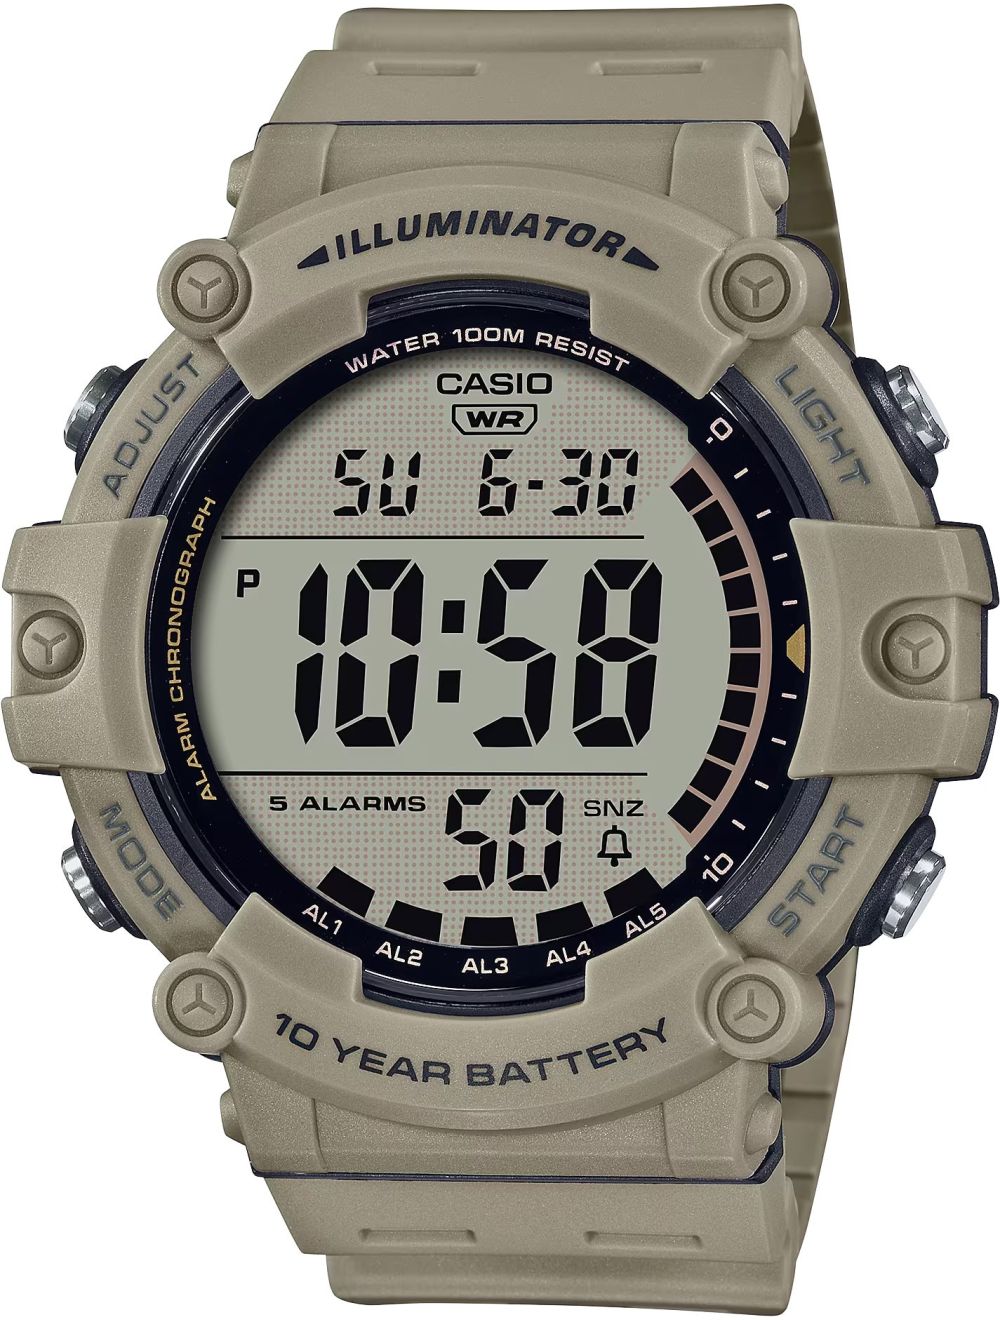 Classic Digital Watch w/ 10-Year Battery